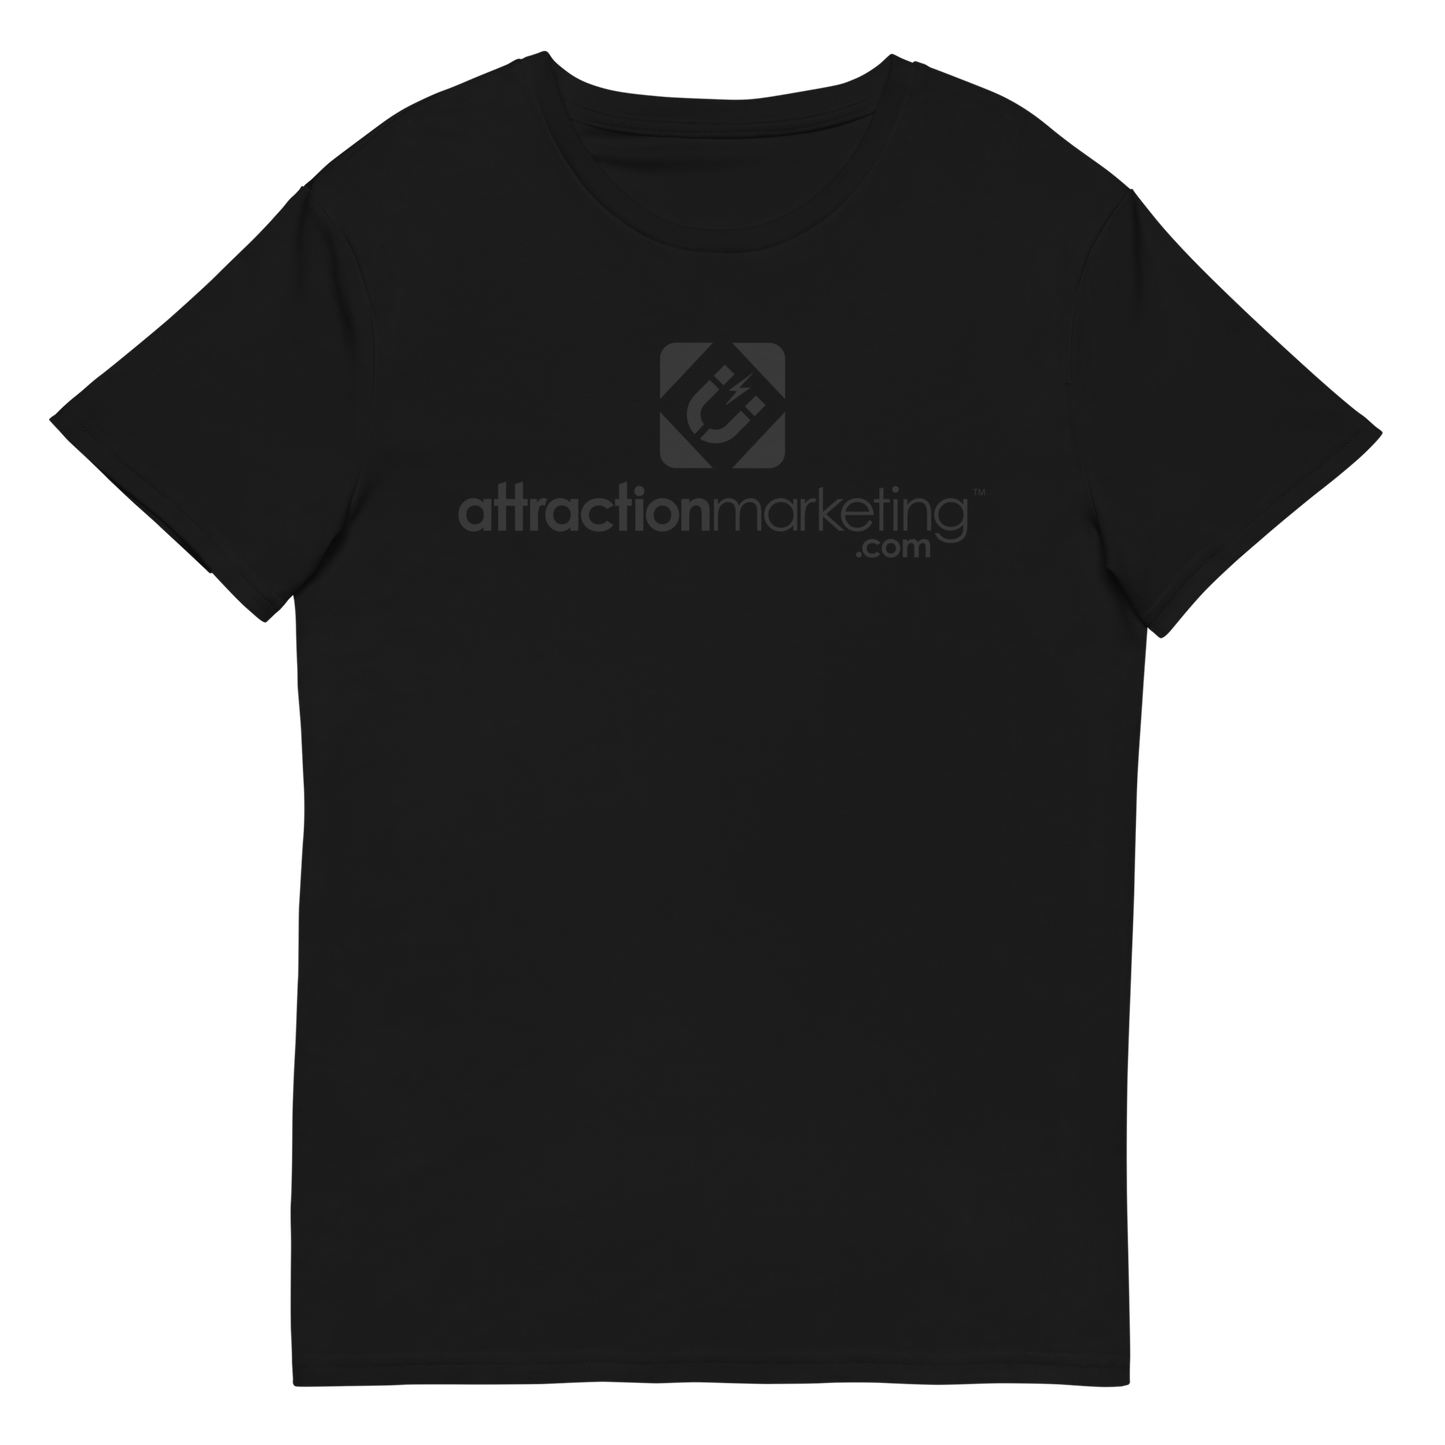 Premium AttractionMarketing.com Blackout T-Shirt